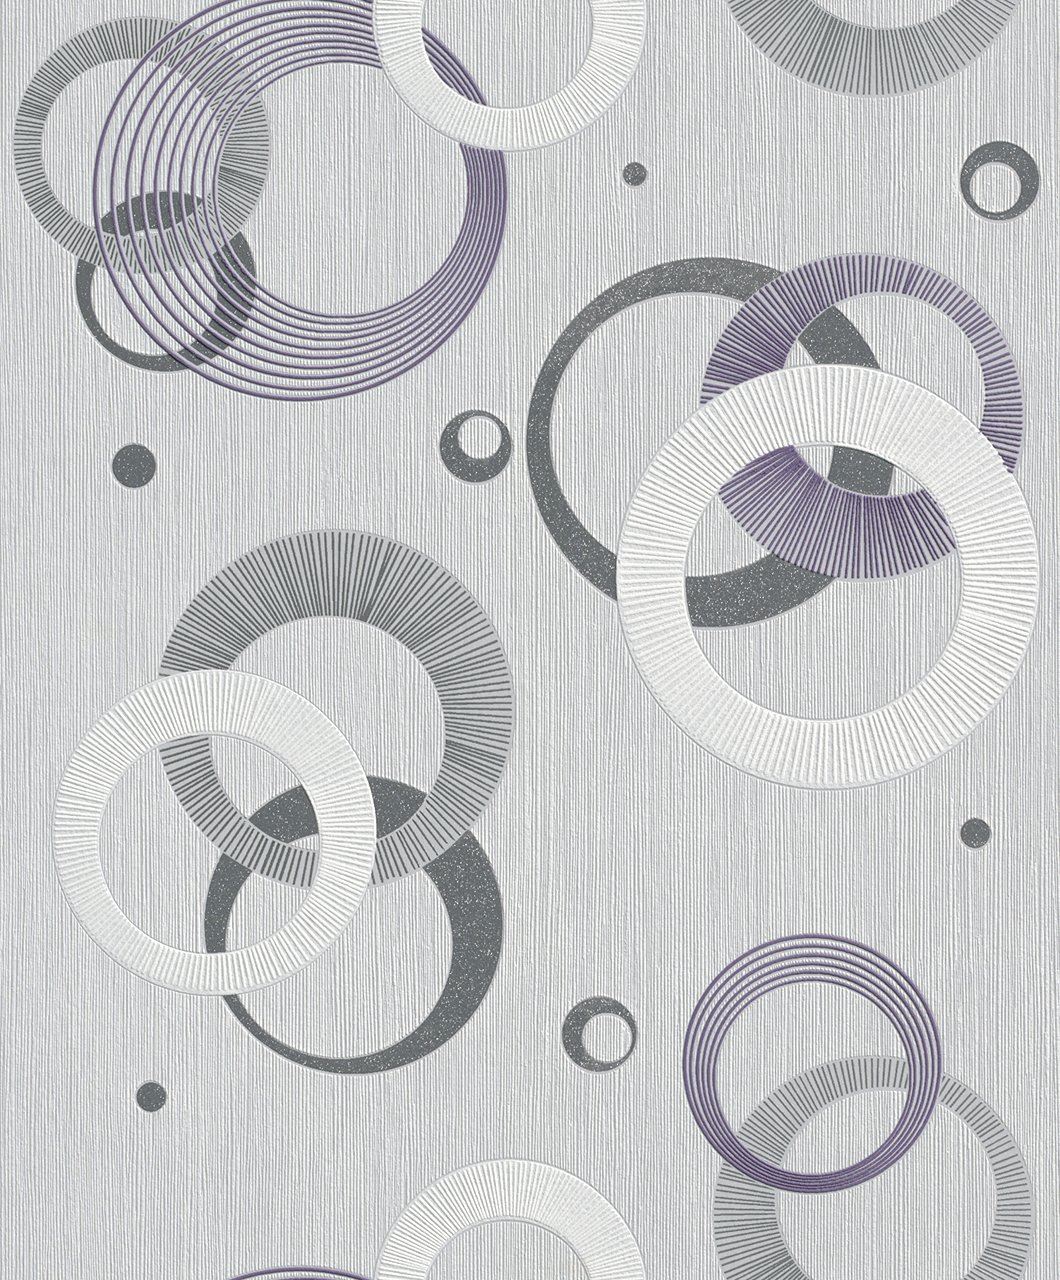 Rasch Plaisir 2015 Wallpaper Violet/Grey/Silver Non-Woven with Retro Sparkling Accents